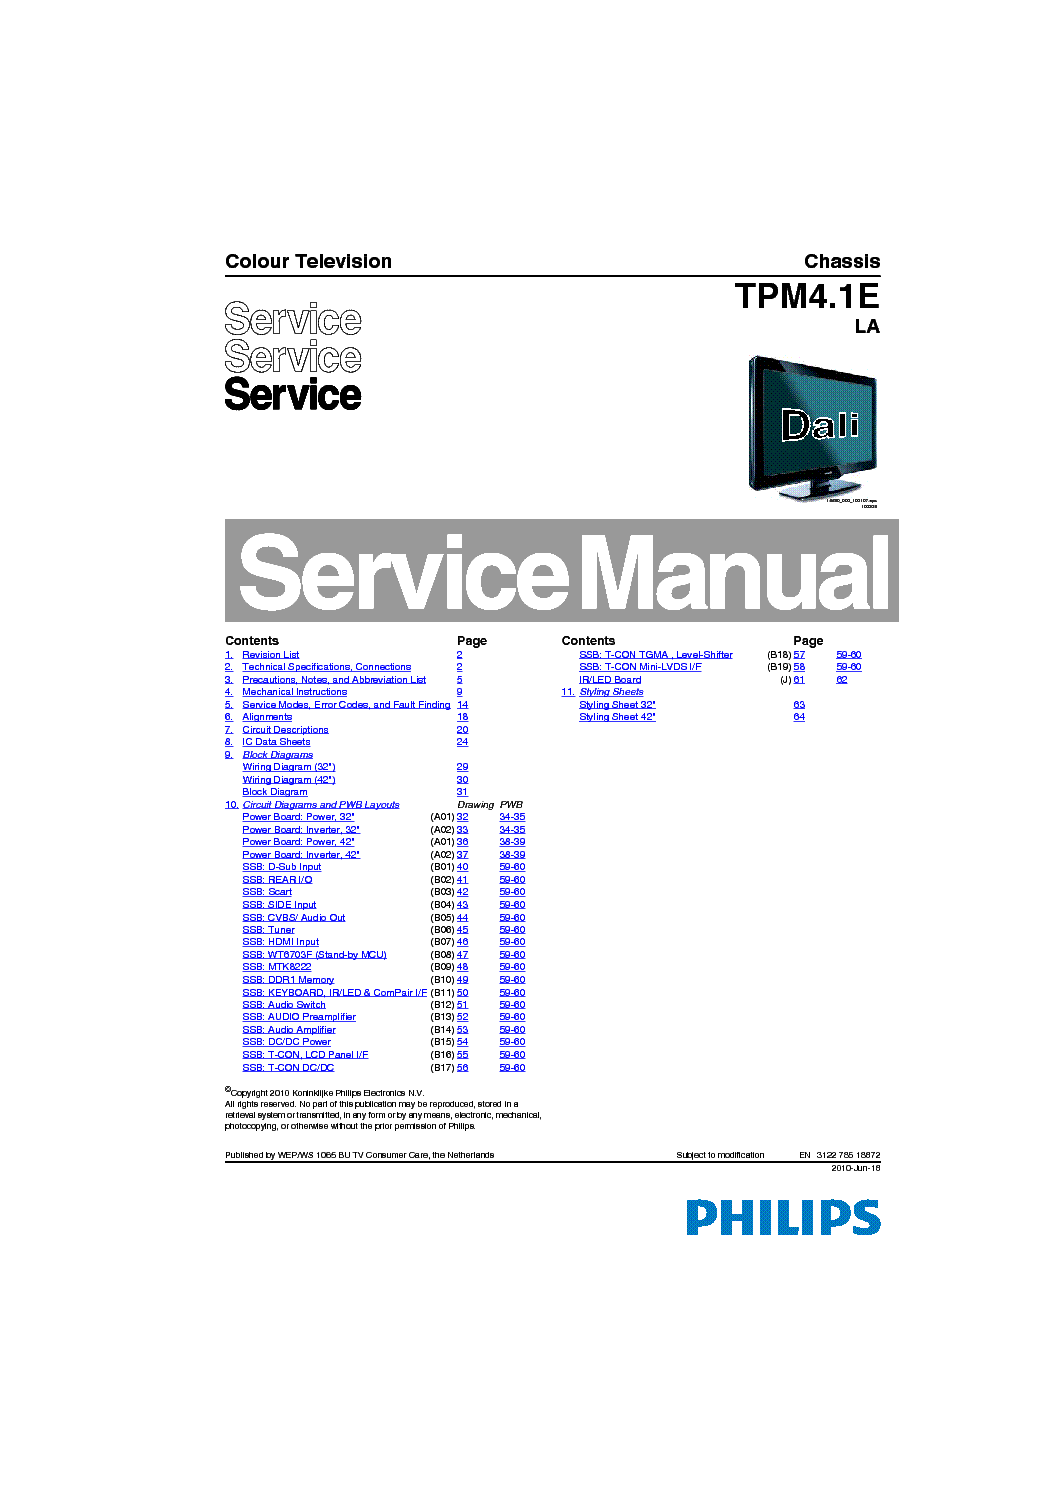 PHILIPS TPM4.1E LA SM service manual (1st page)